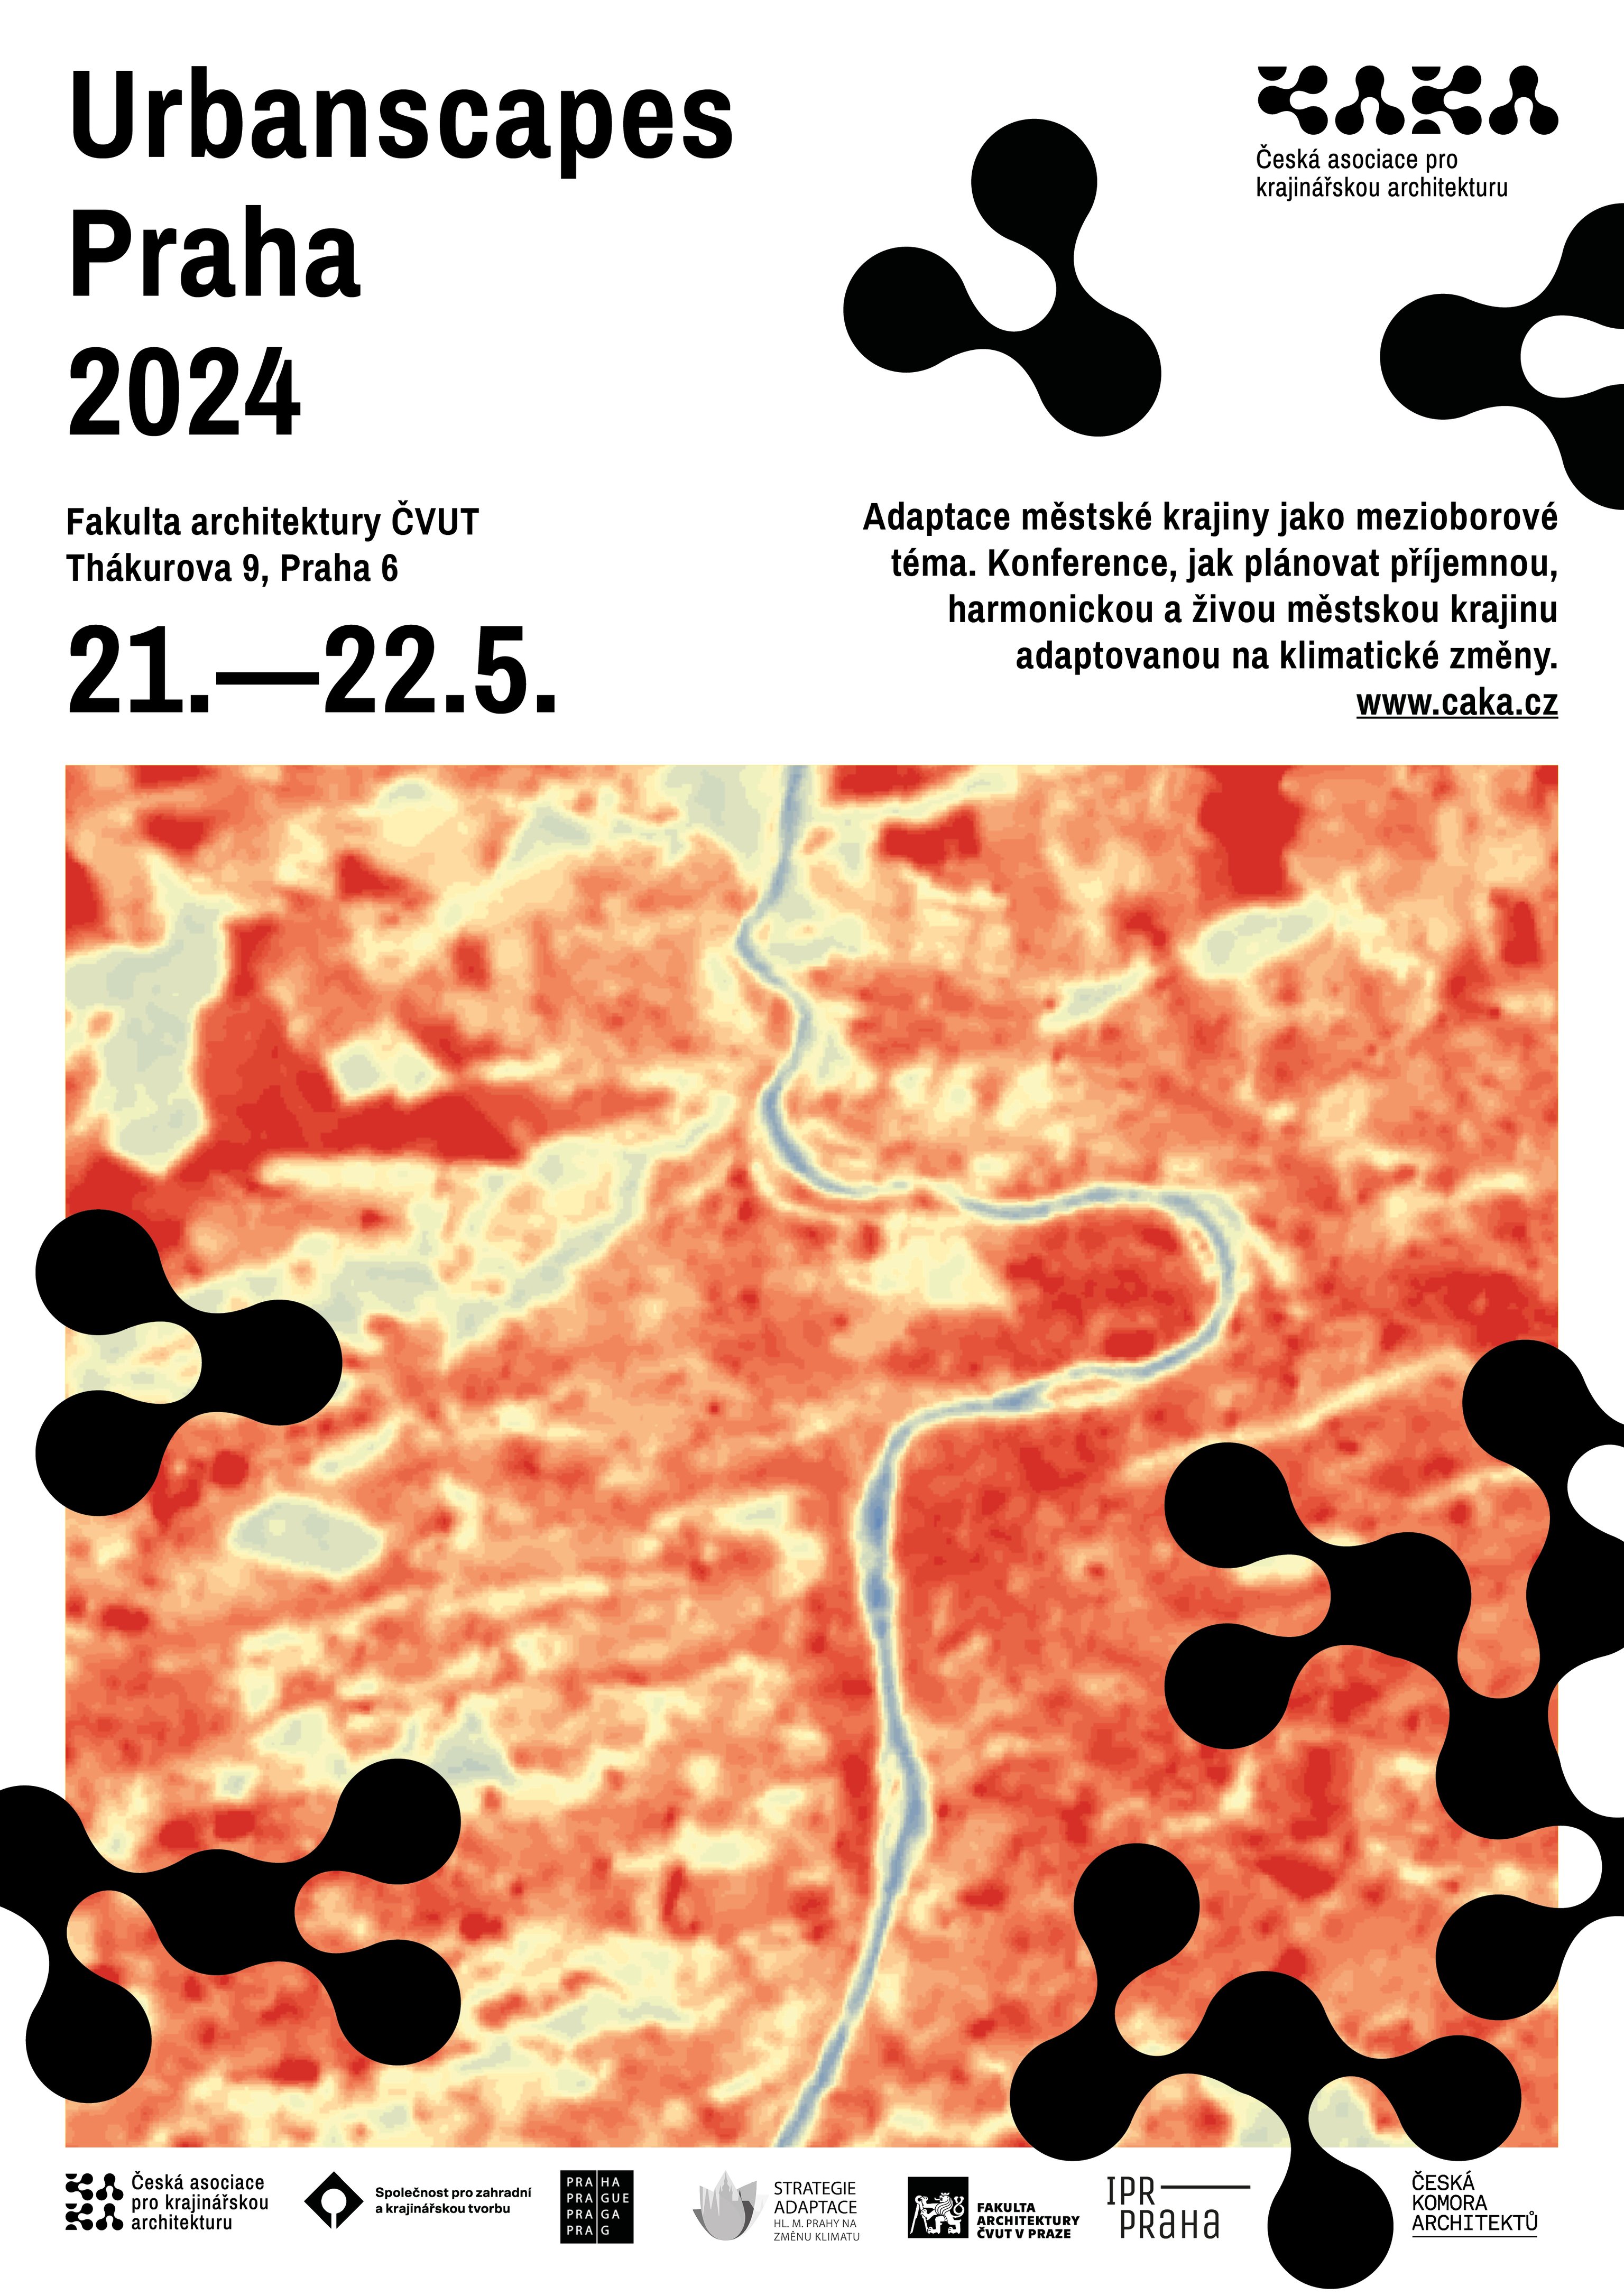 Urbanscapes Praha 2024, Adaptace městské krajiny jako mezioborové téma